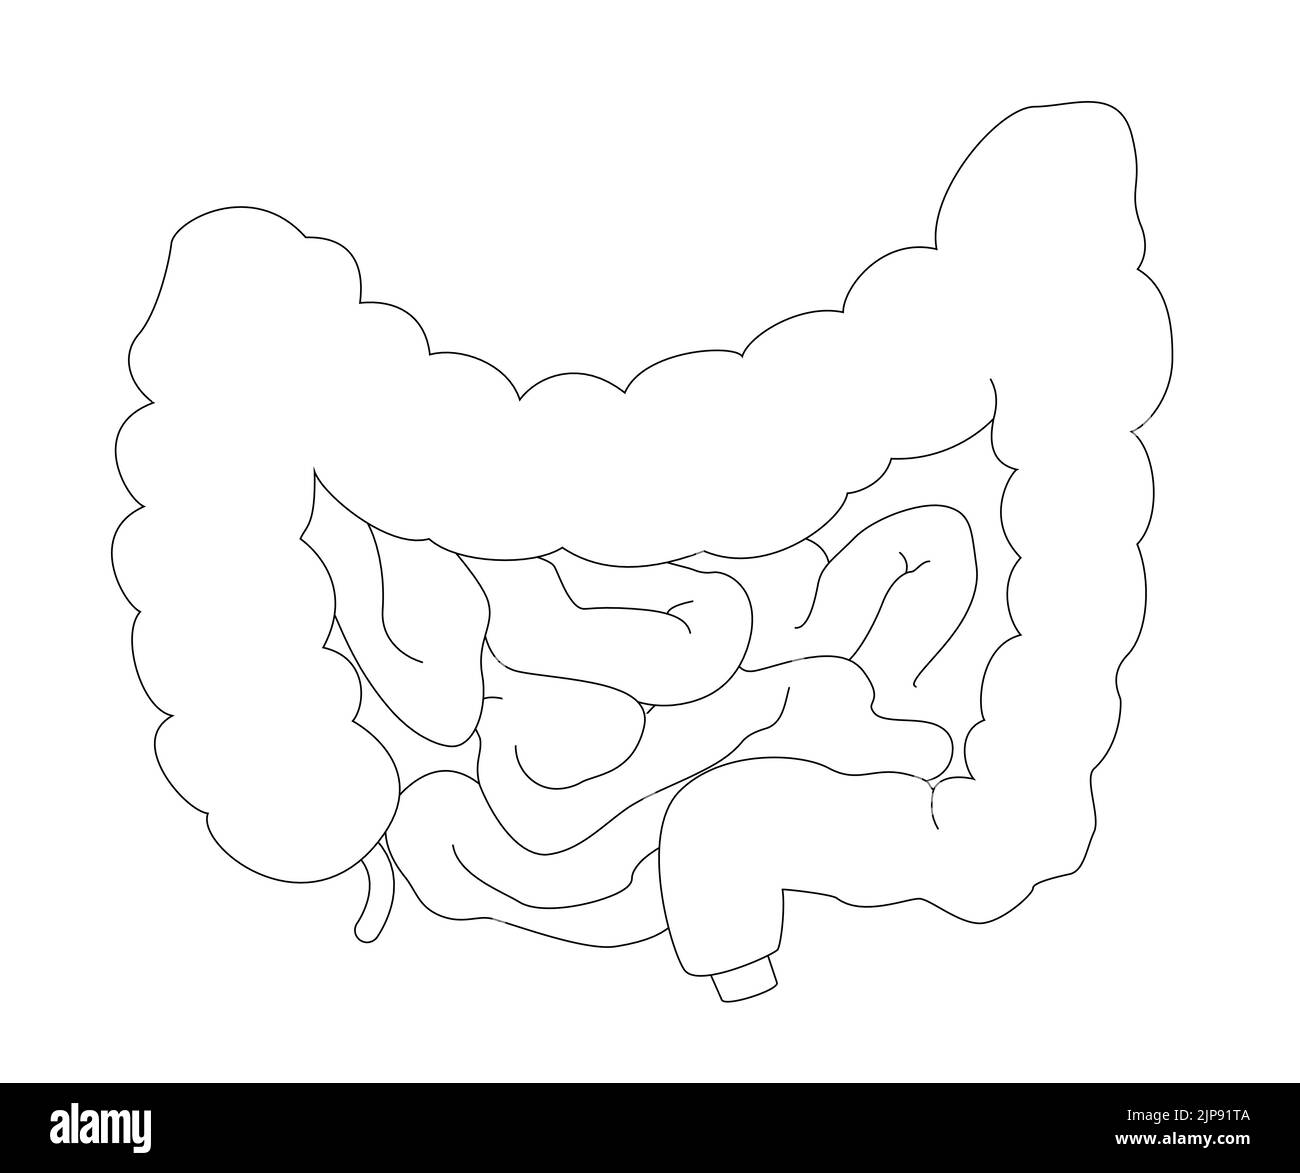 Grafico medico di contorno di intestino in stile realistico con ombre e luci. Concetto di anatomia umana per uso didattico o farmaceutico Illustrazione Vettoriale